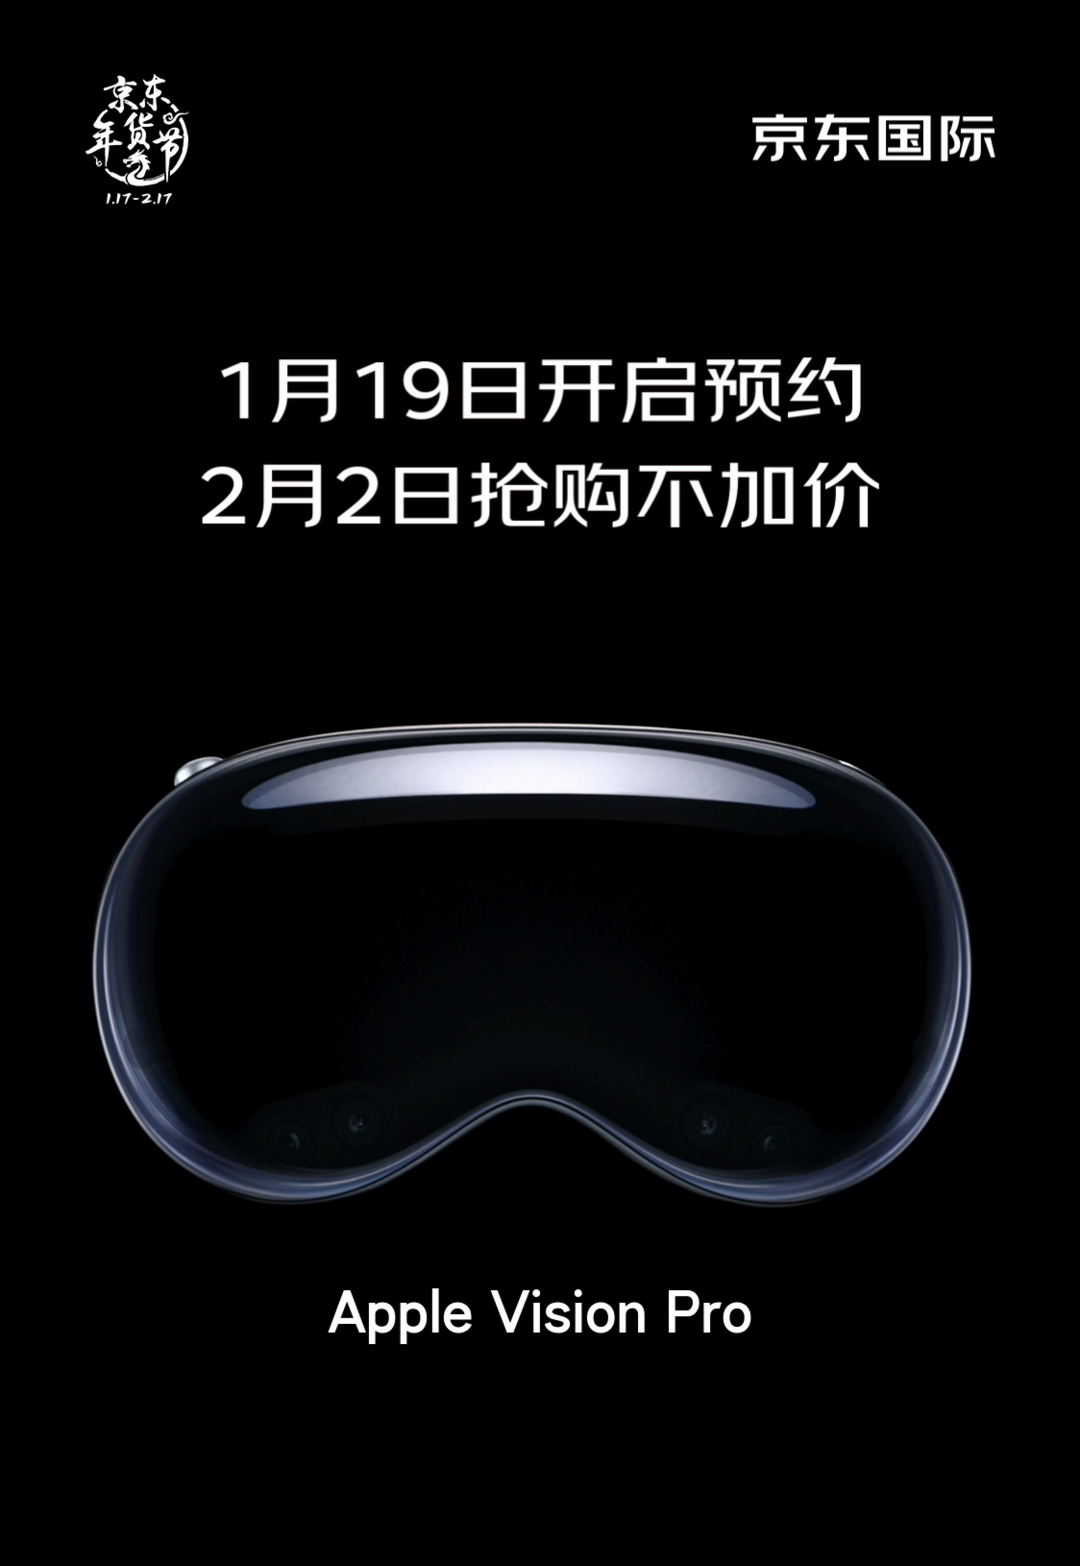 苹果 Vision Pro 头显上架：今晚开启预约，2 月 2 日不加价抢购